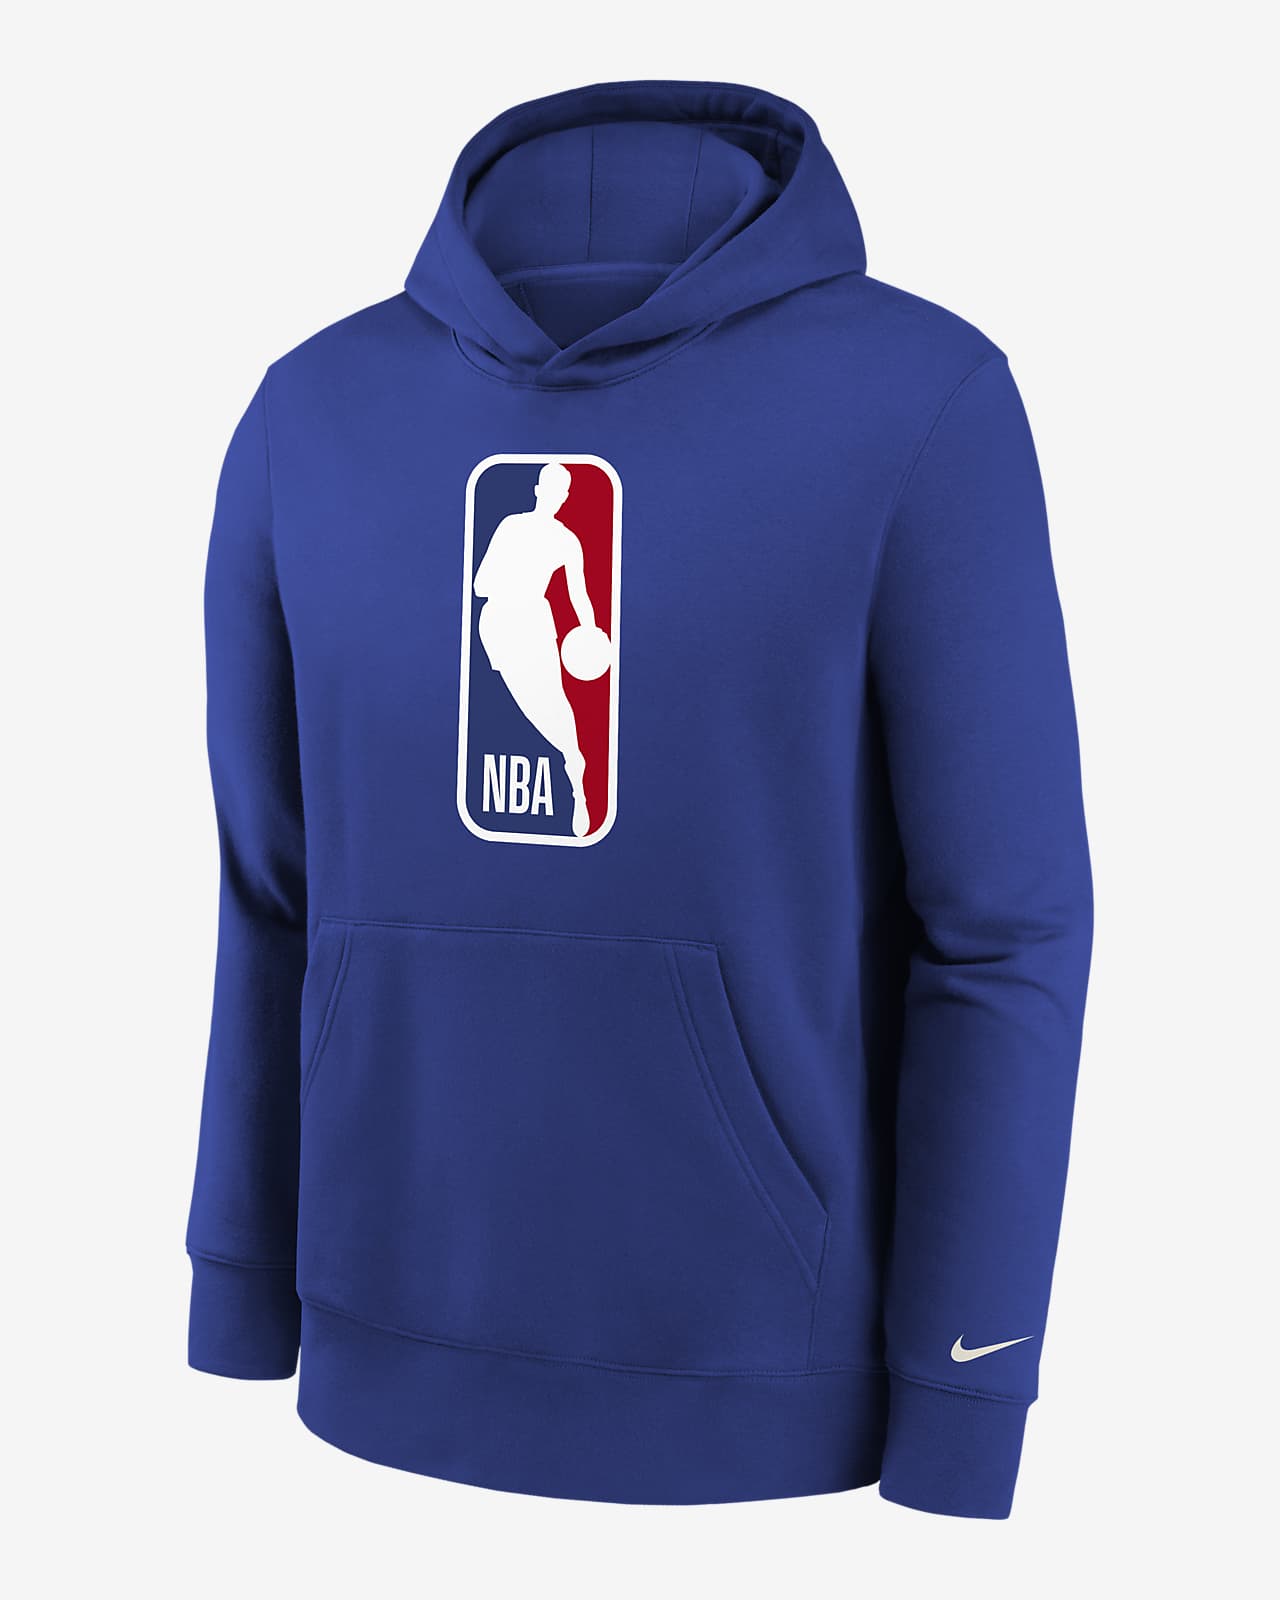 Team 31 Essential Older Kids' Nike NBA Pullover Hoodie